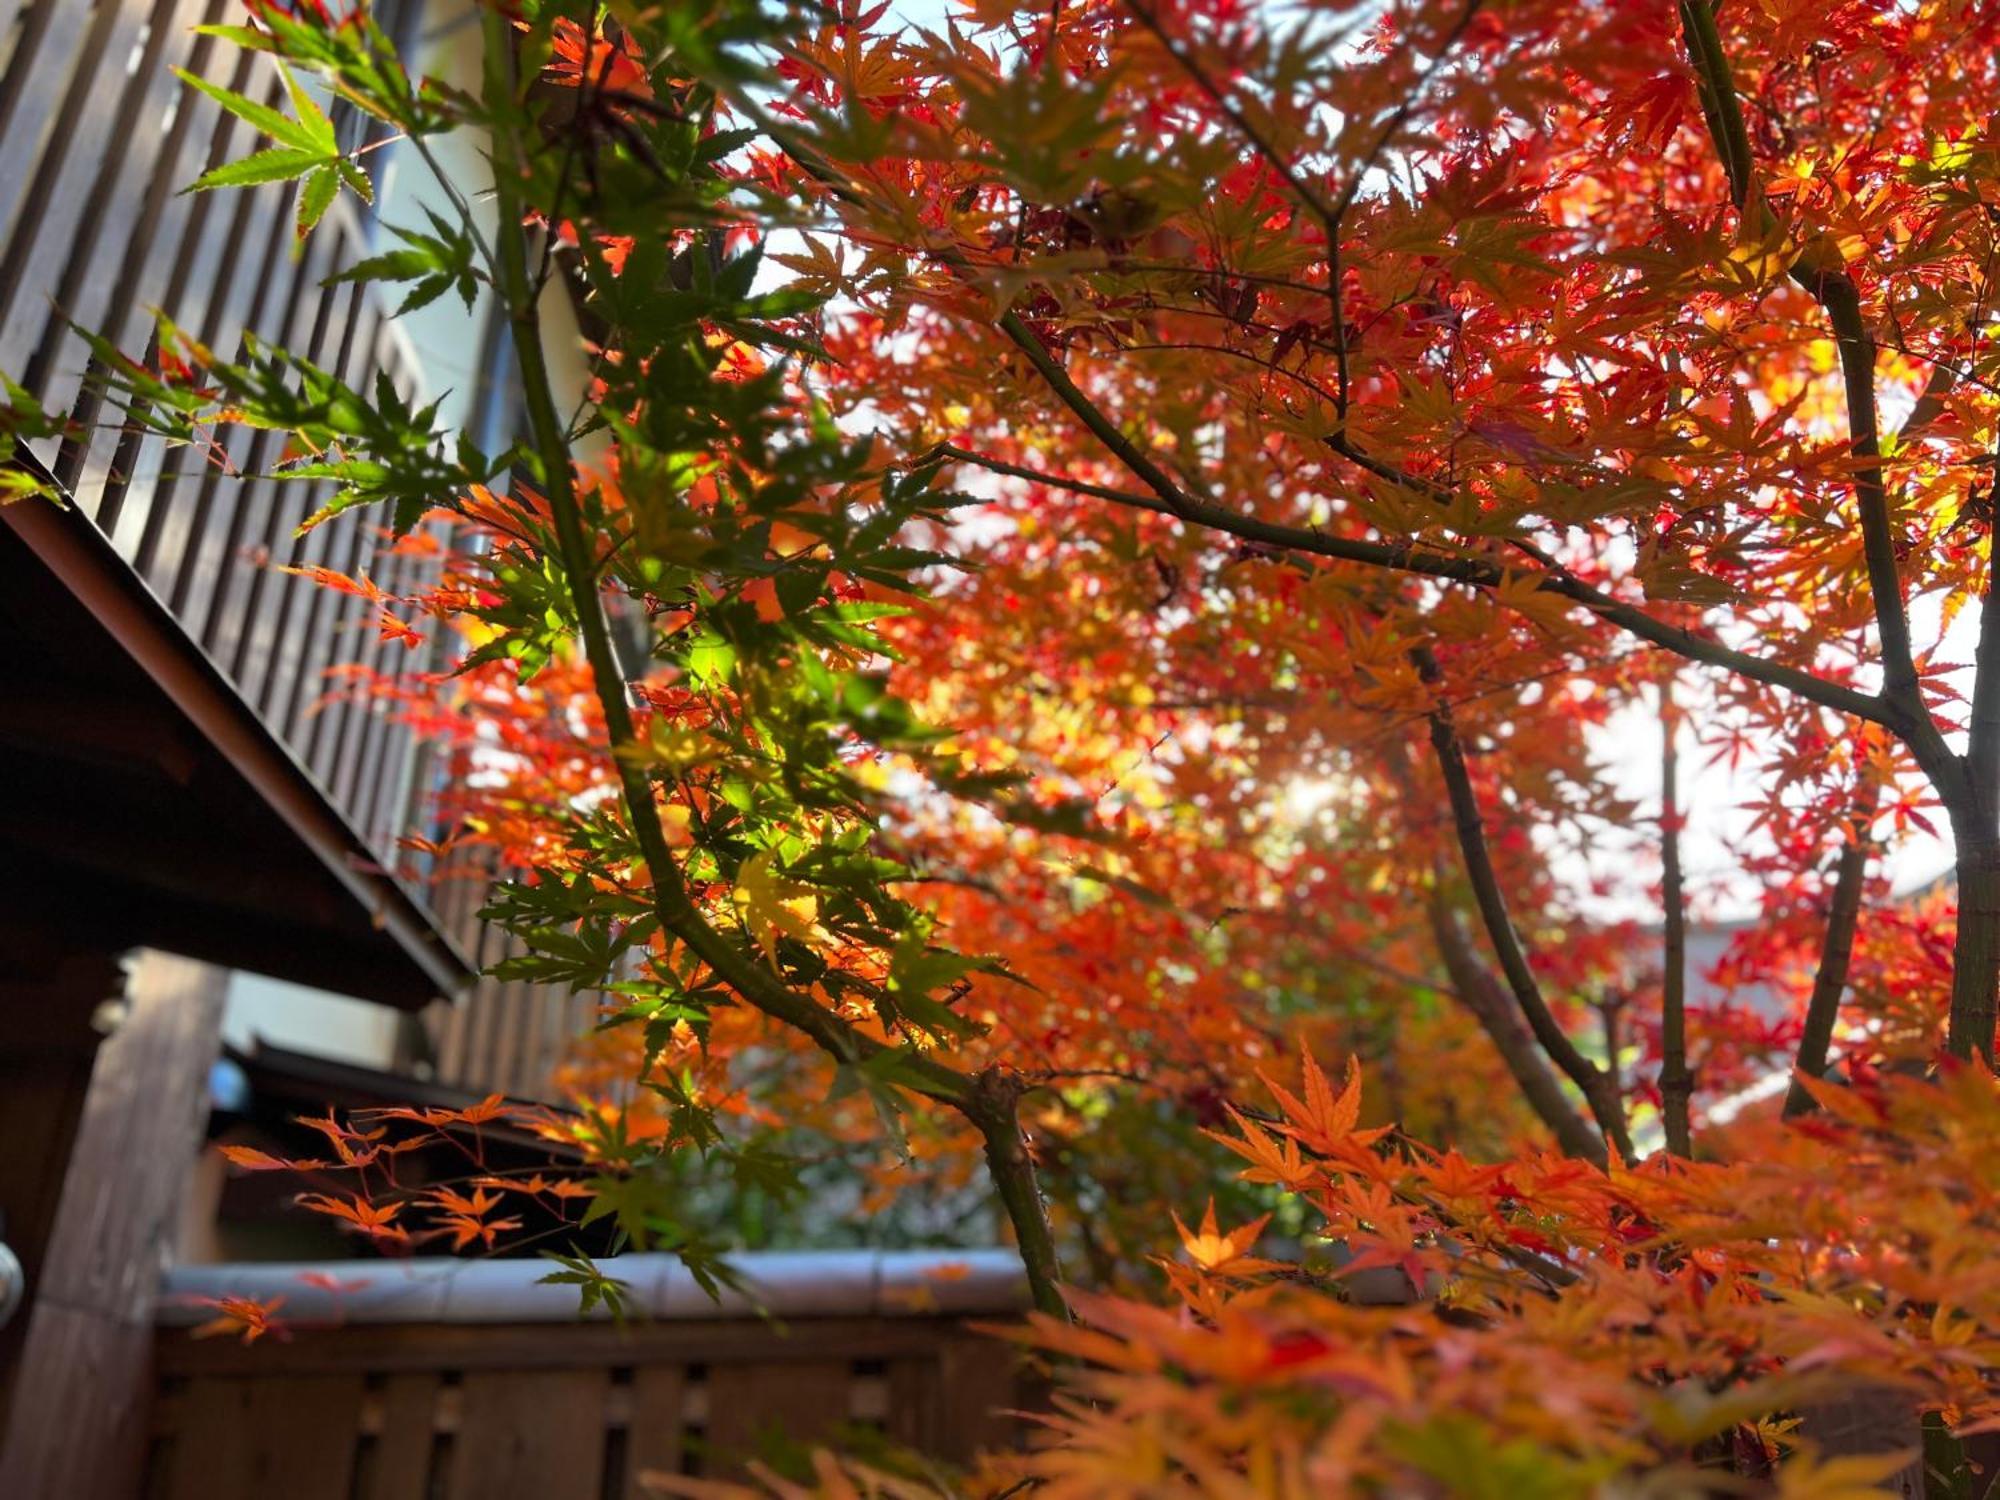 Villa Imakumano Terrace - Dohachi An 道八庵 à Kyoto Extérieur photo